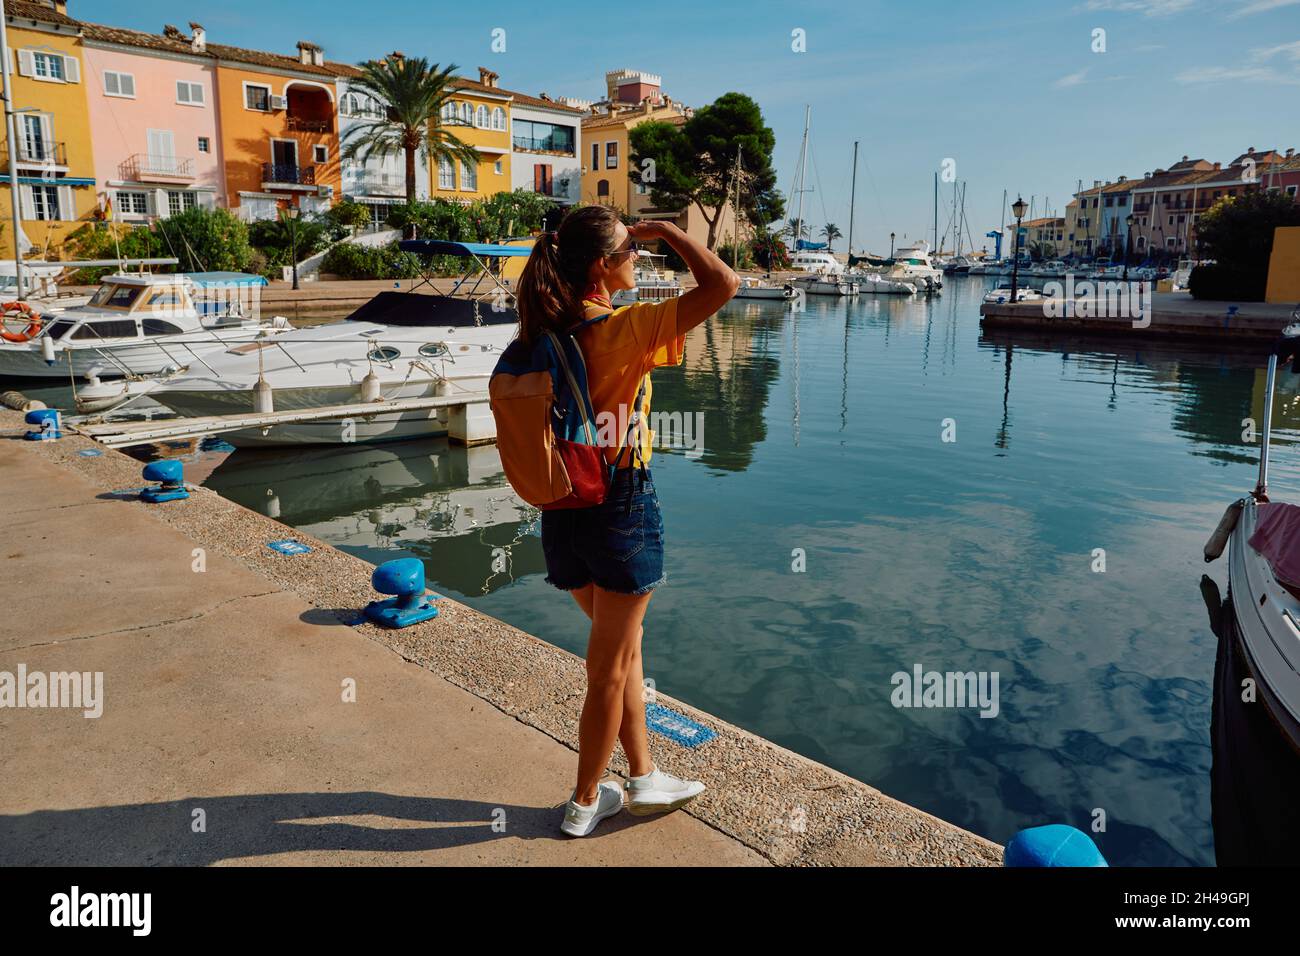 Una donna viaggiatrice si trova sul molo con yacht e barche nello splendido porto di Port Saplaya vicino a Valencia, con case colorate. concetto di viaggiatore Foto Stock